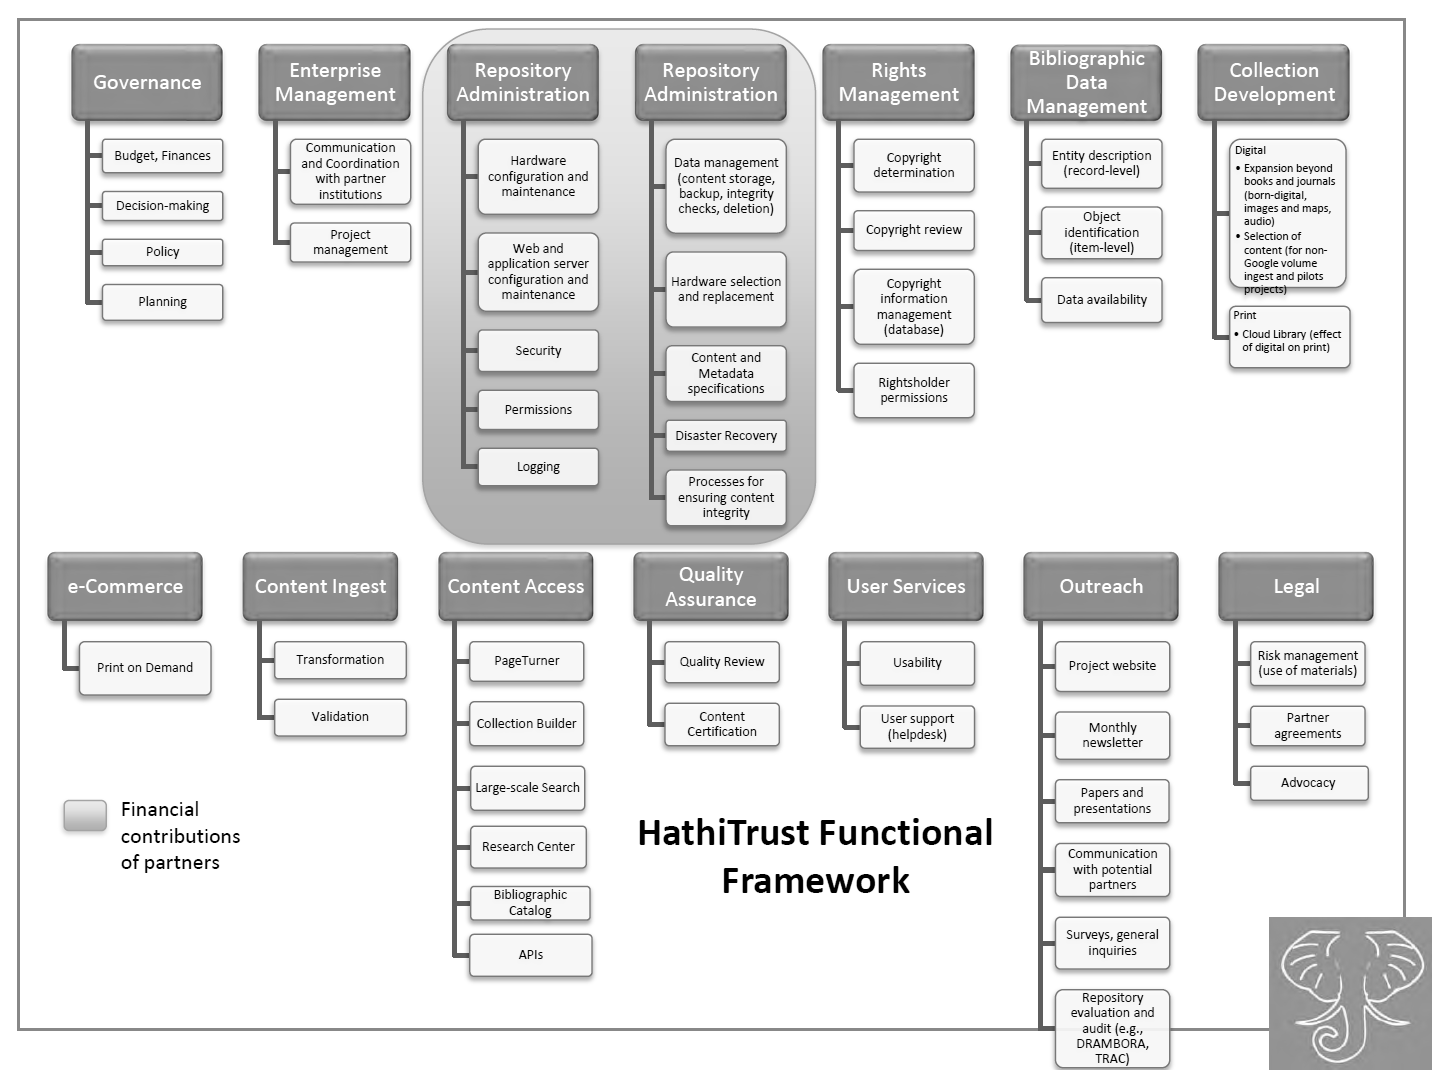 HathiTrust’s Functional Framework